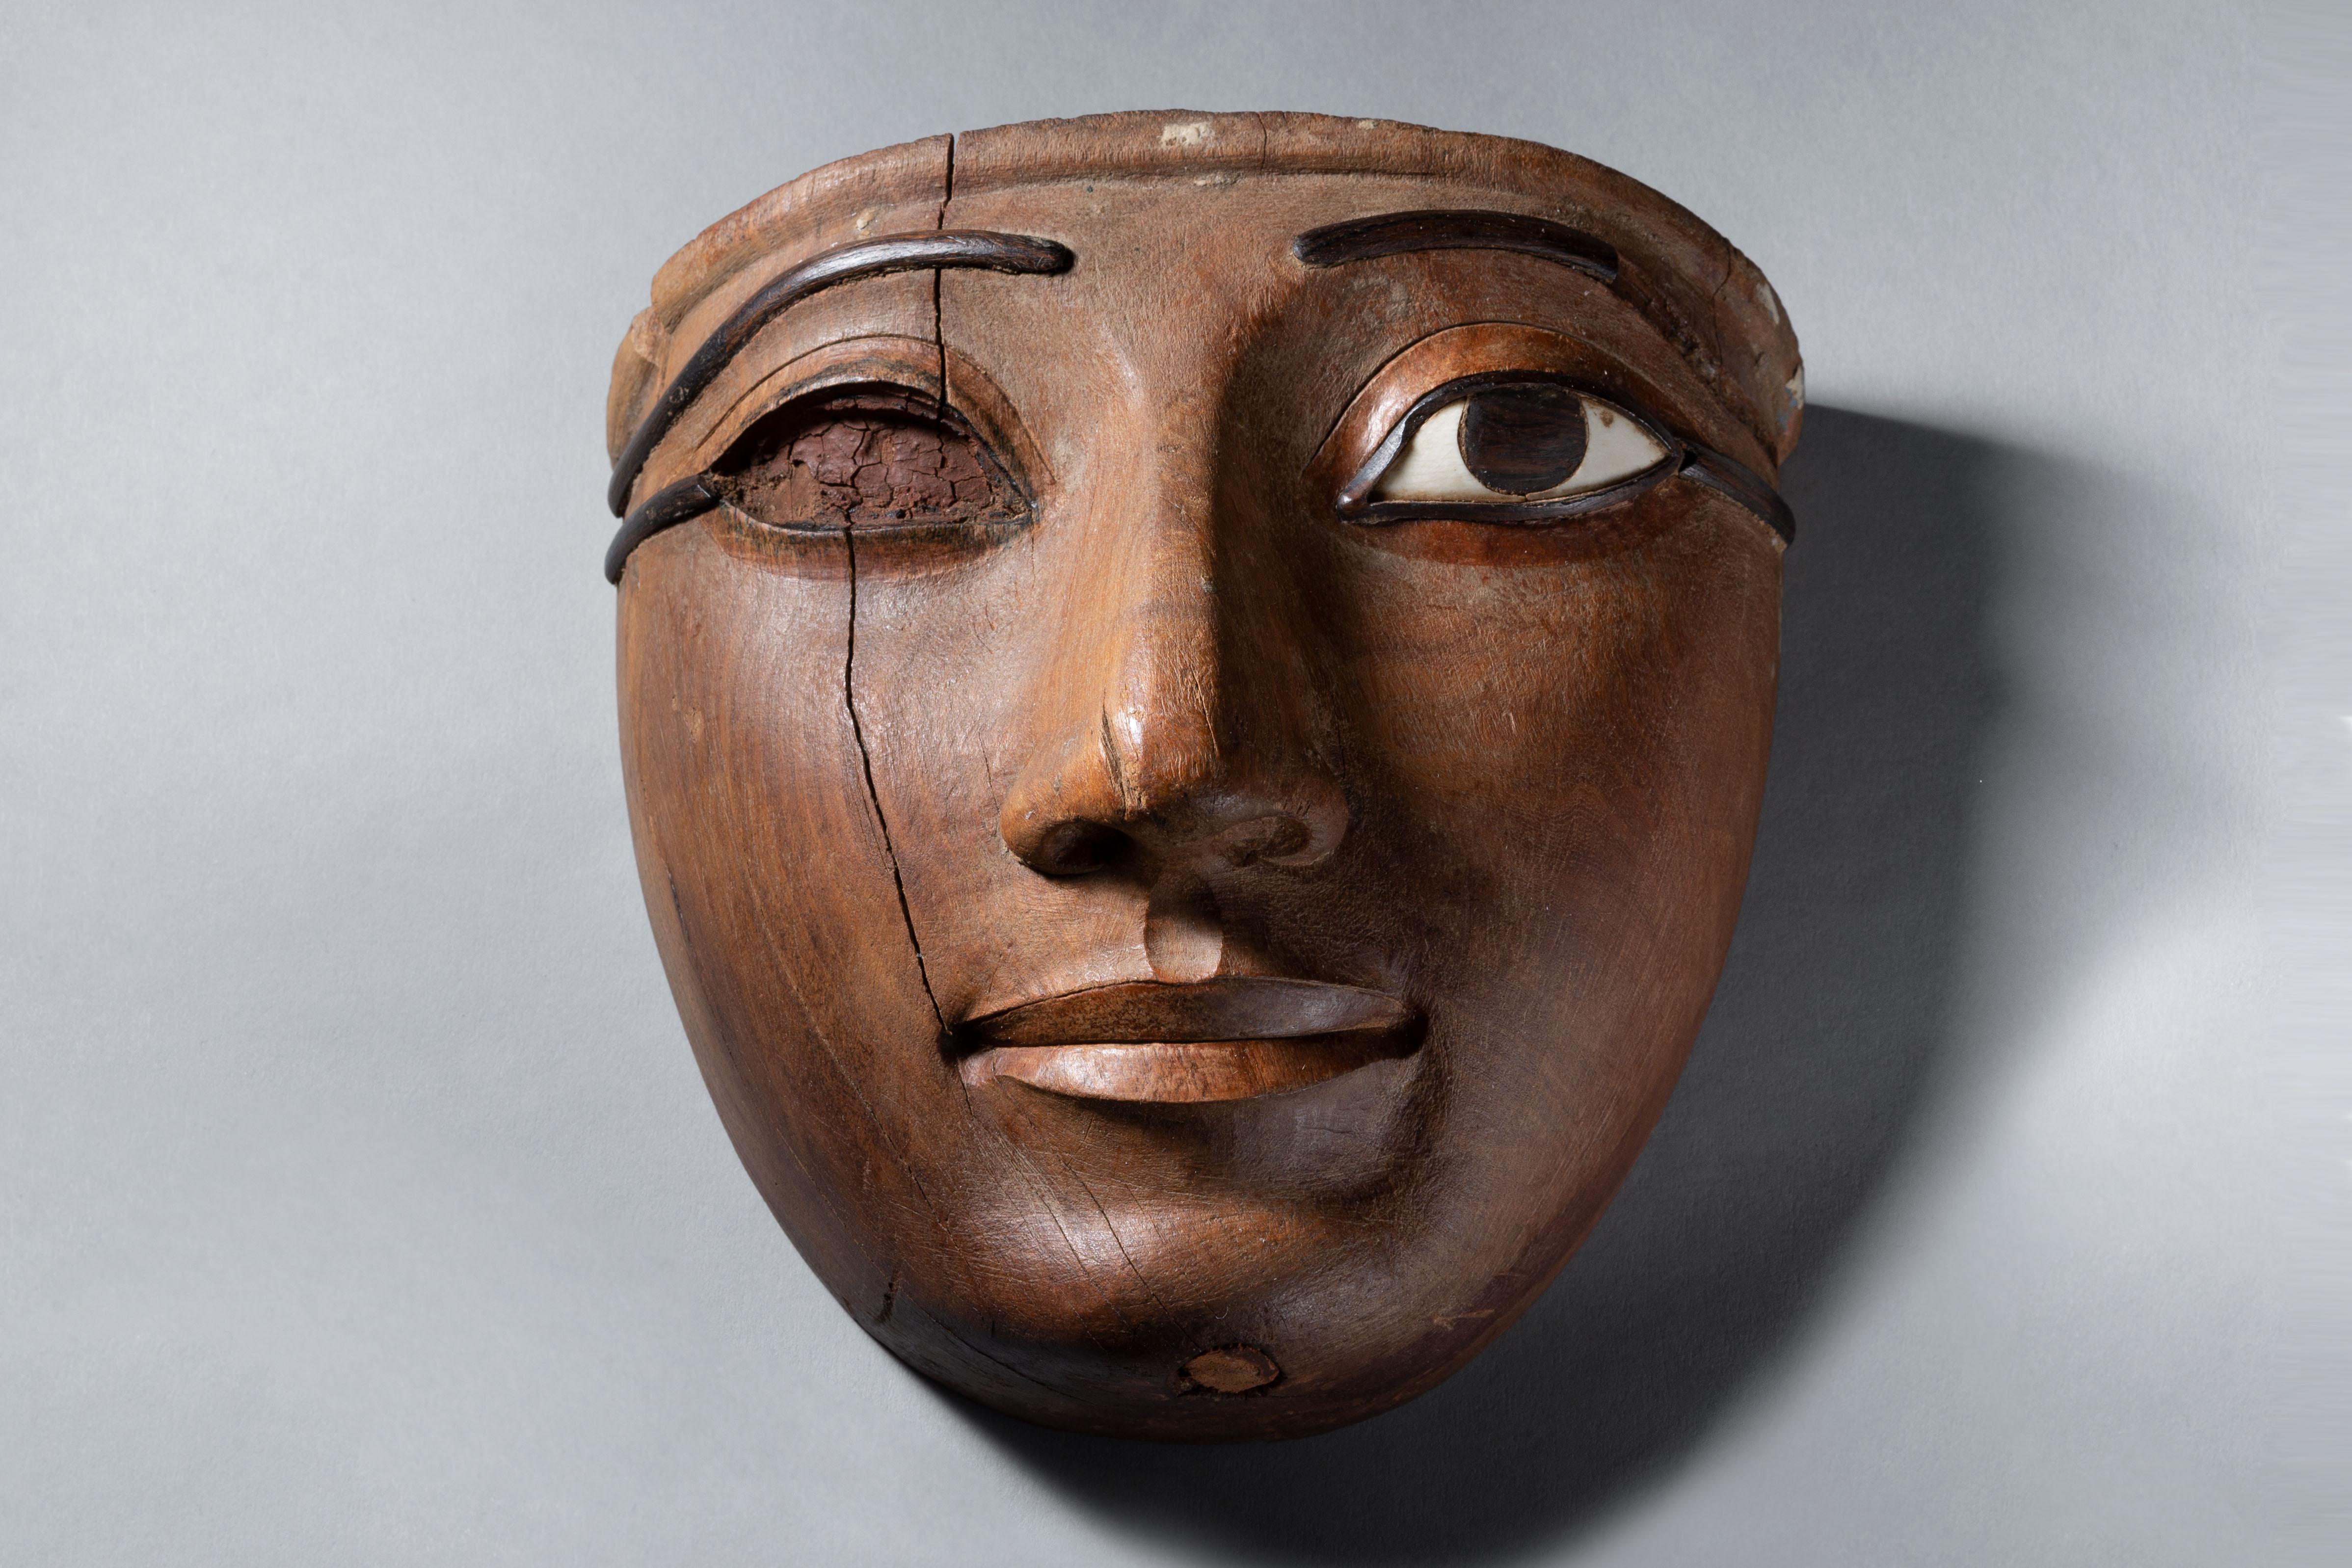 Masque sarcophage en bois d'une qualité exceptionnelle
Troisième période intermédiaire,  21e dynastie, vers 1069-945 avant J.-C.
Bois d'acacia, bois de rose, ivoire d'hippopotame

Sculpté d'une main de maître dans une seule pièce de bois dur à grain